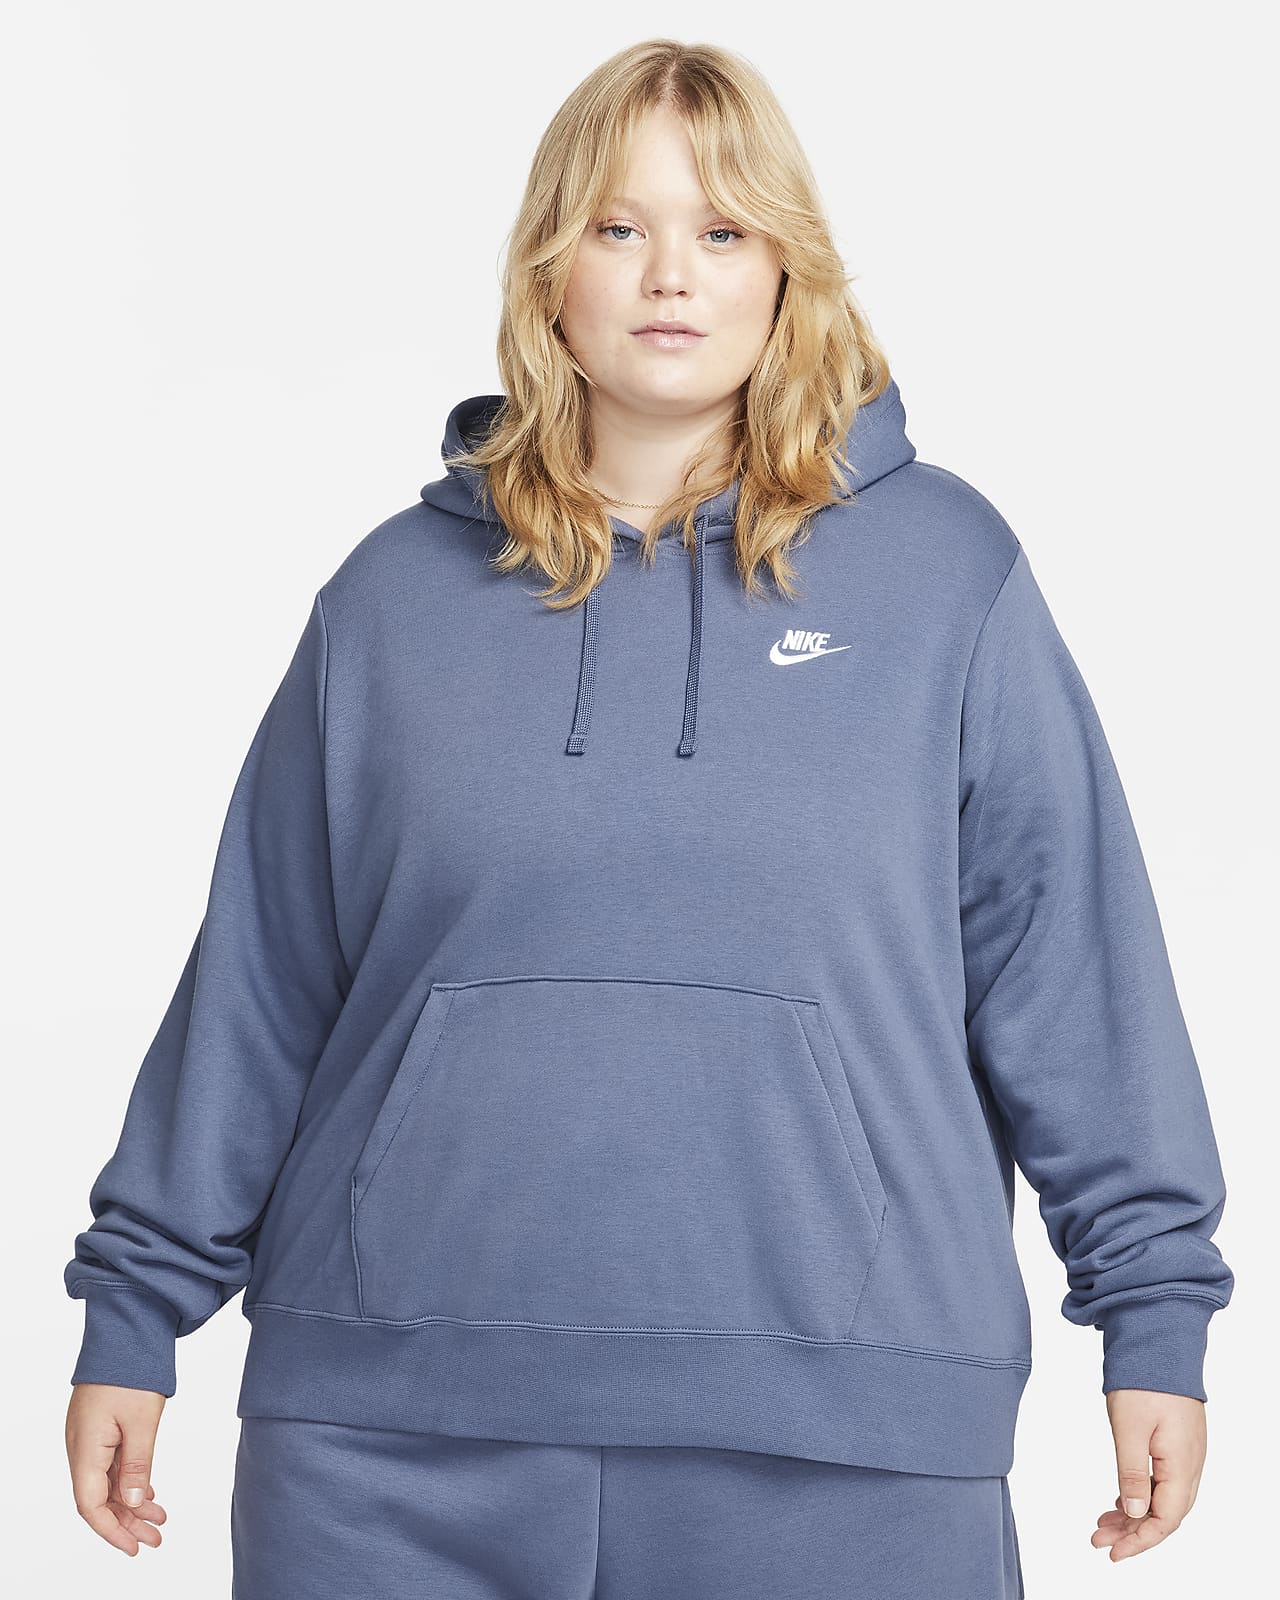 Nike Sportswear Fleece Women's Pullover Hoodie (Plus Size). Nike.com